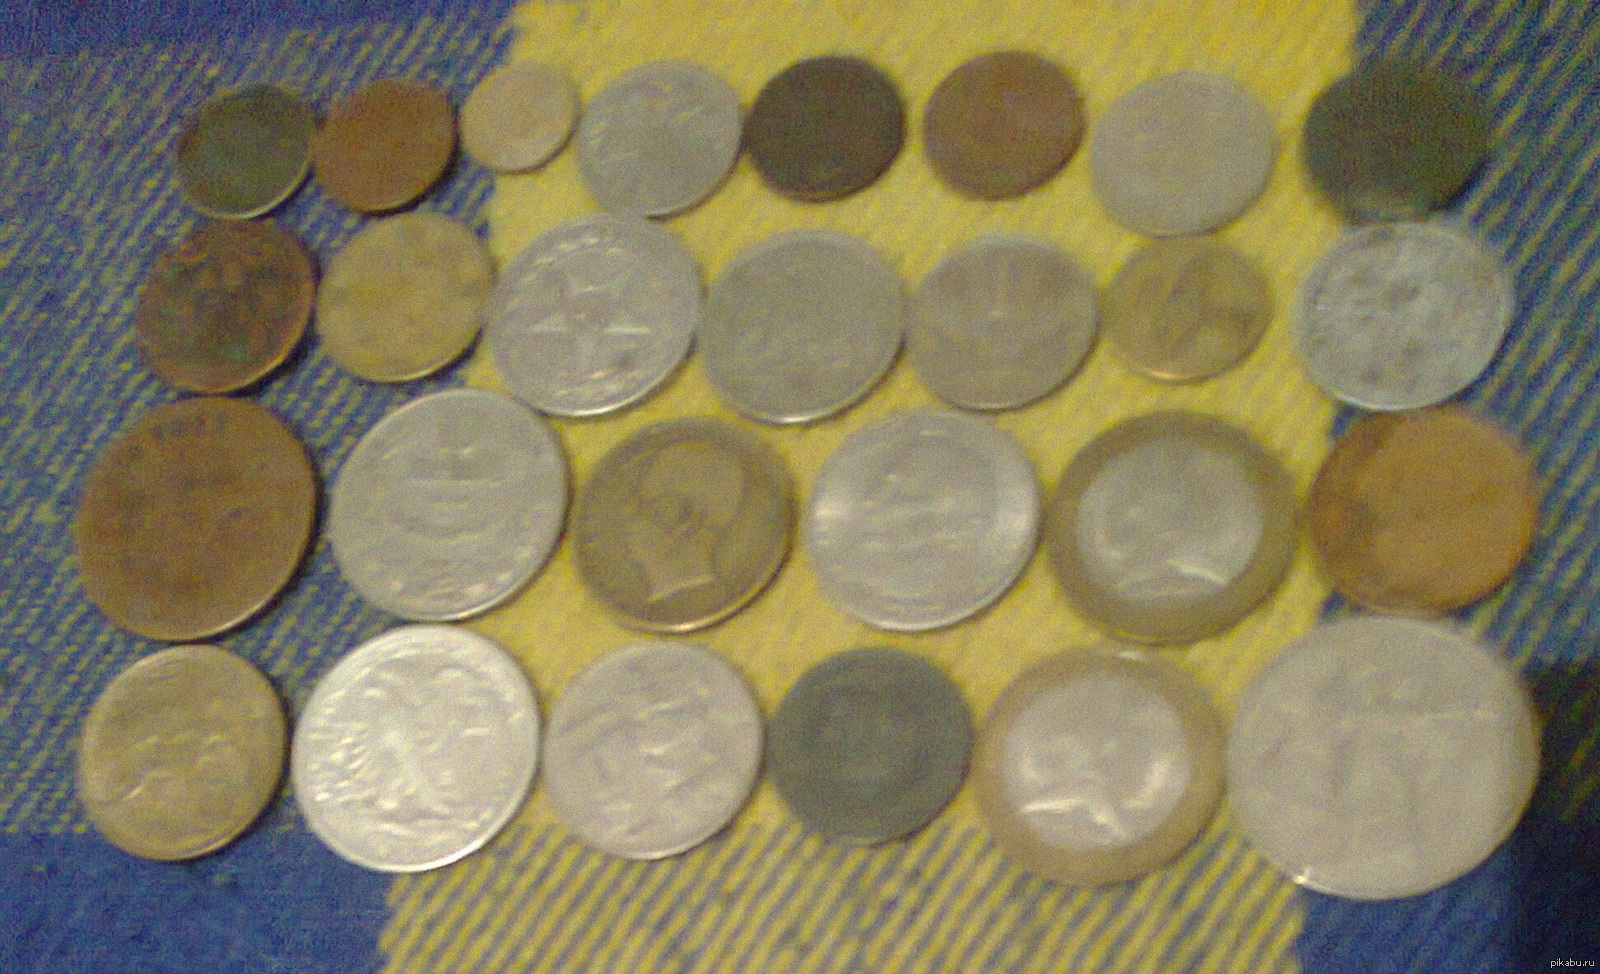 Деньги второй мировой войны. Монеты второй мировой войны. Немецкие монеты второй мировой войны. Коллекция монет второй мировой войны России.